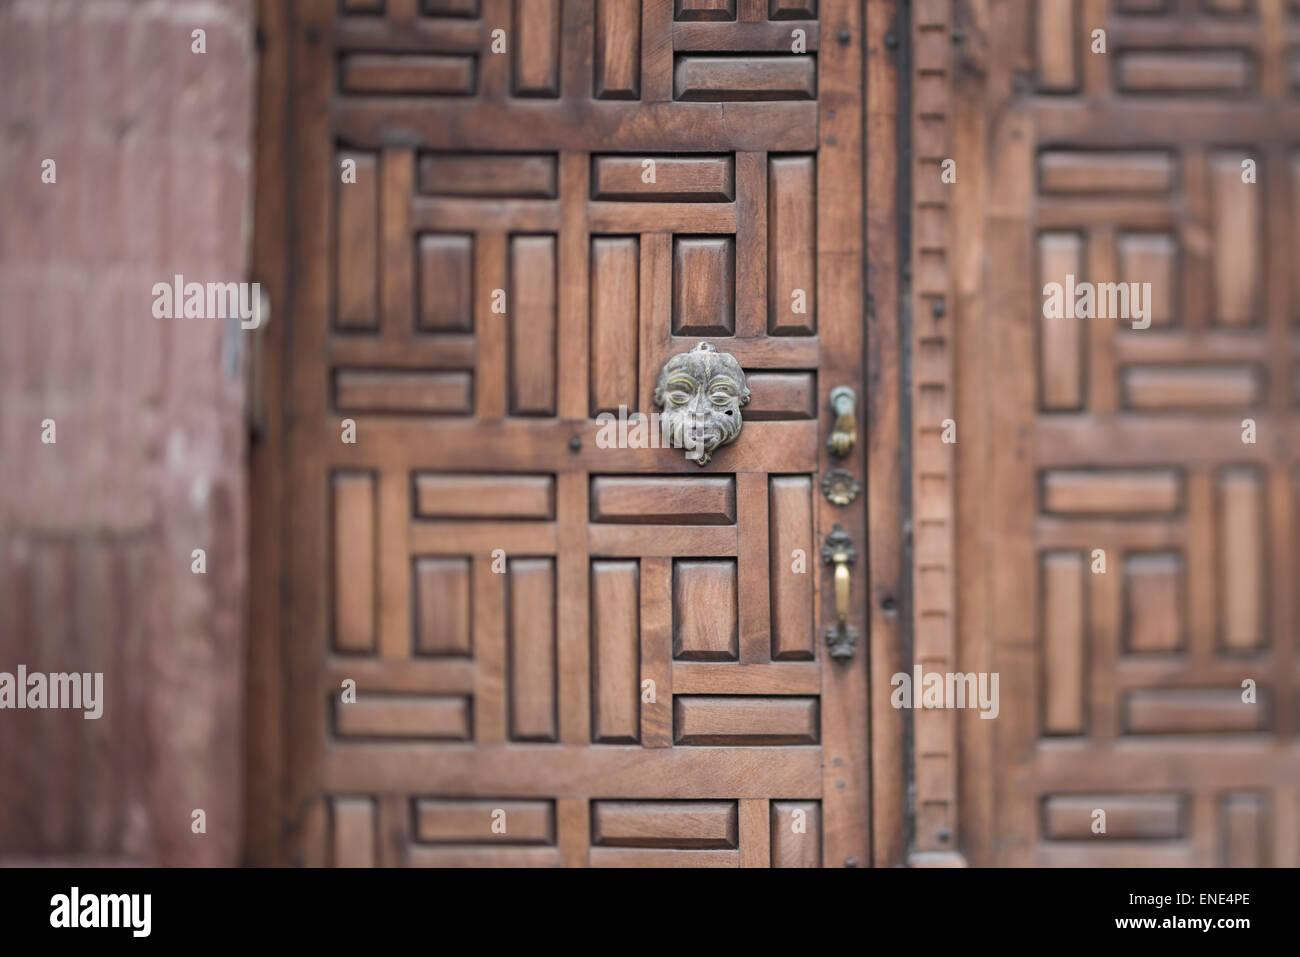 Door on street in San Miguel de Allende Mexico Stock Photo